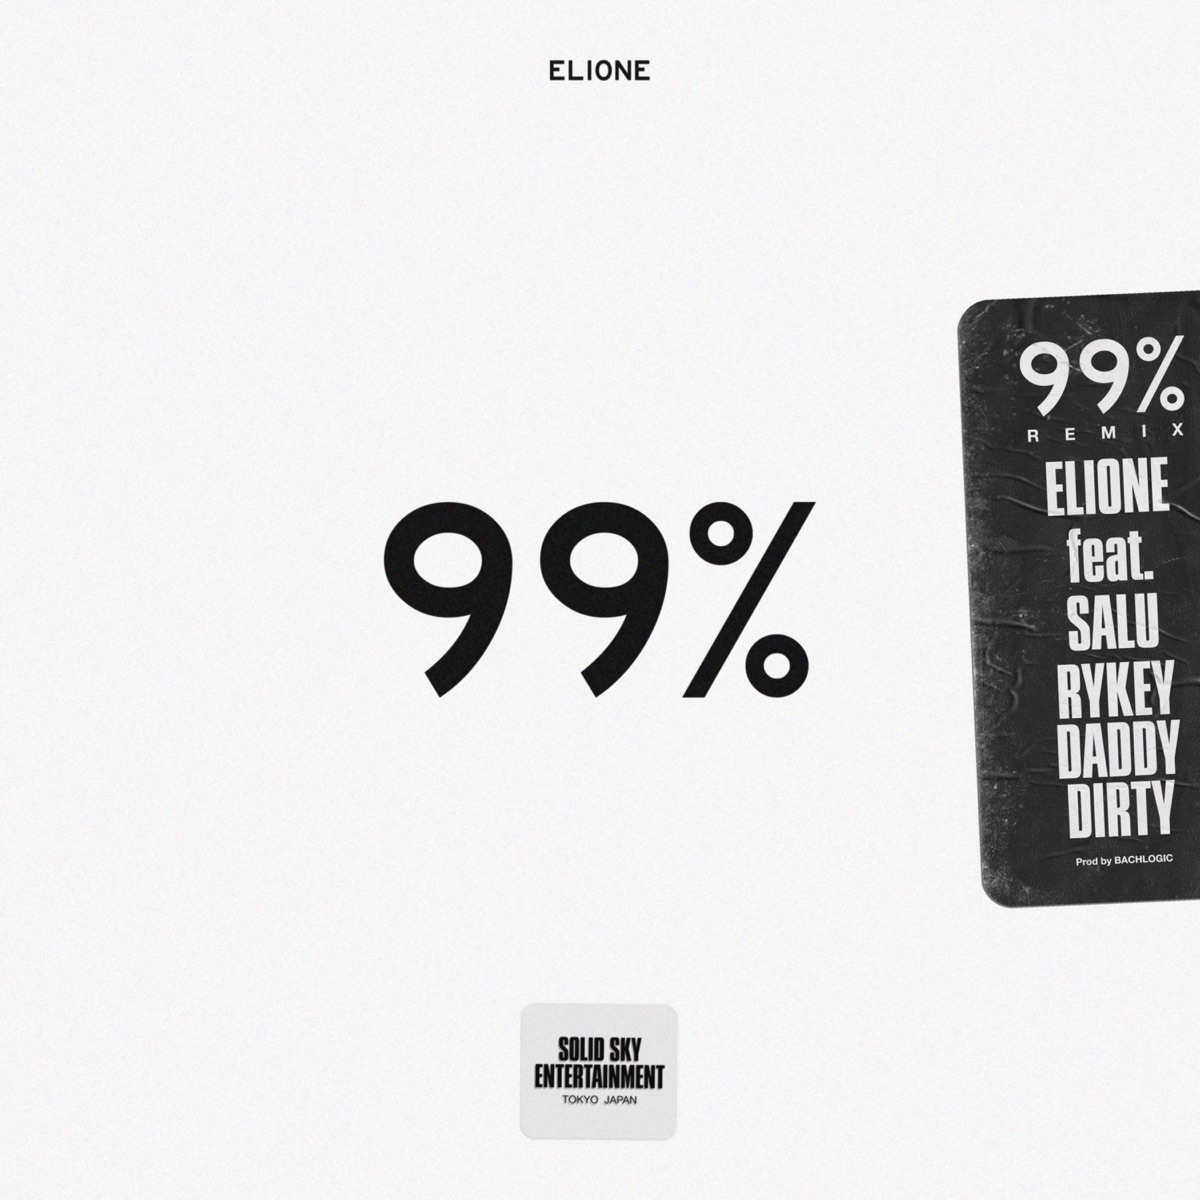 Cover for『ELIONE - 99% (feat. SALU & RYKEYDADDYDIRTY) [Remix]』from the release『99% (feat. SALU & RYKEYDADDYDIRTY) [Remix]』